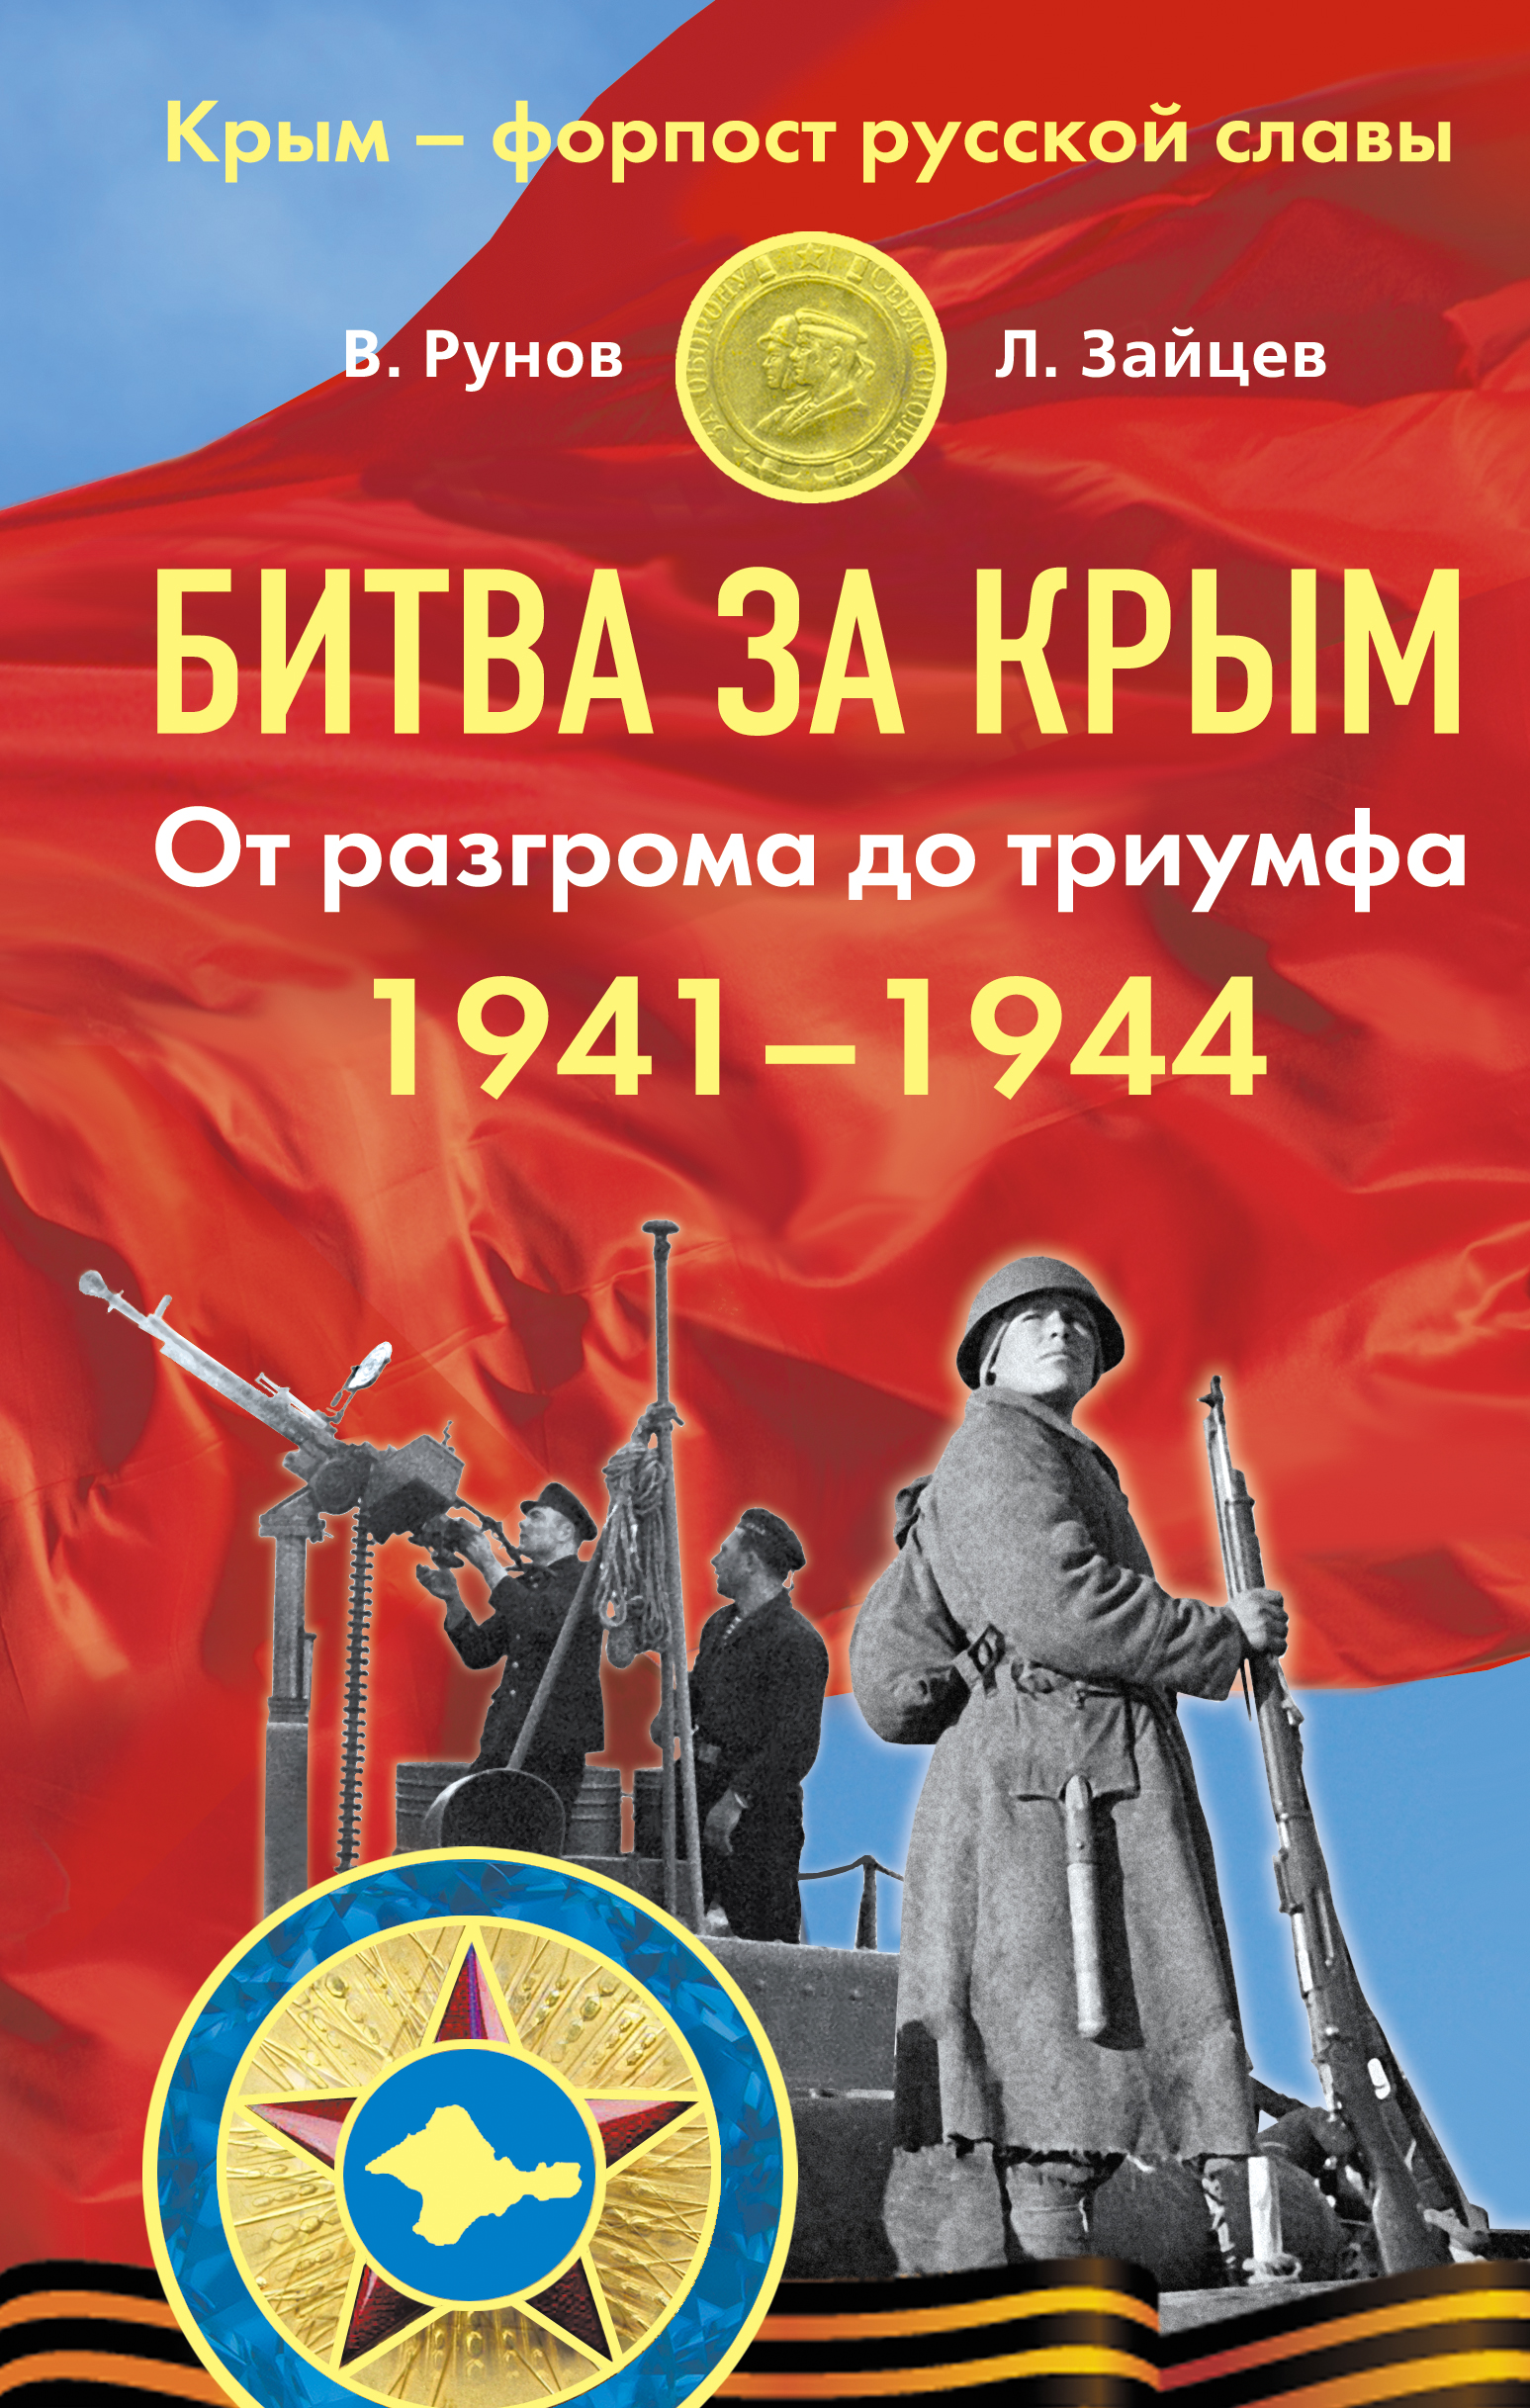 Битва за Крым 1941-1944. От разгрома до триумфа происходит уверенно утверждая